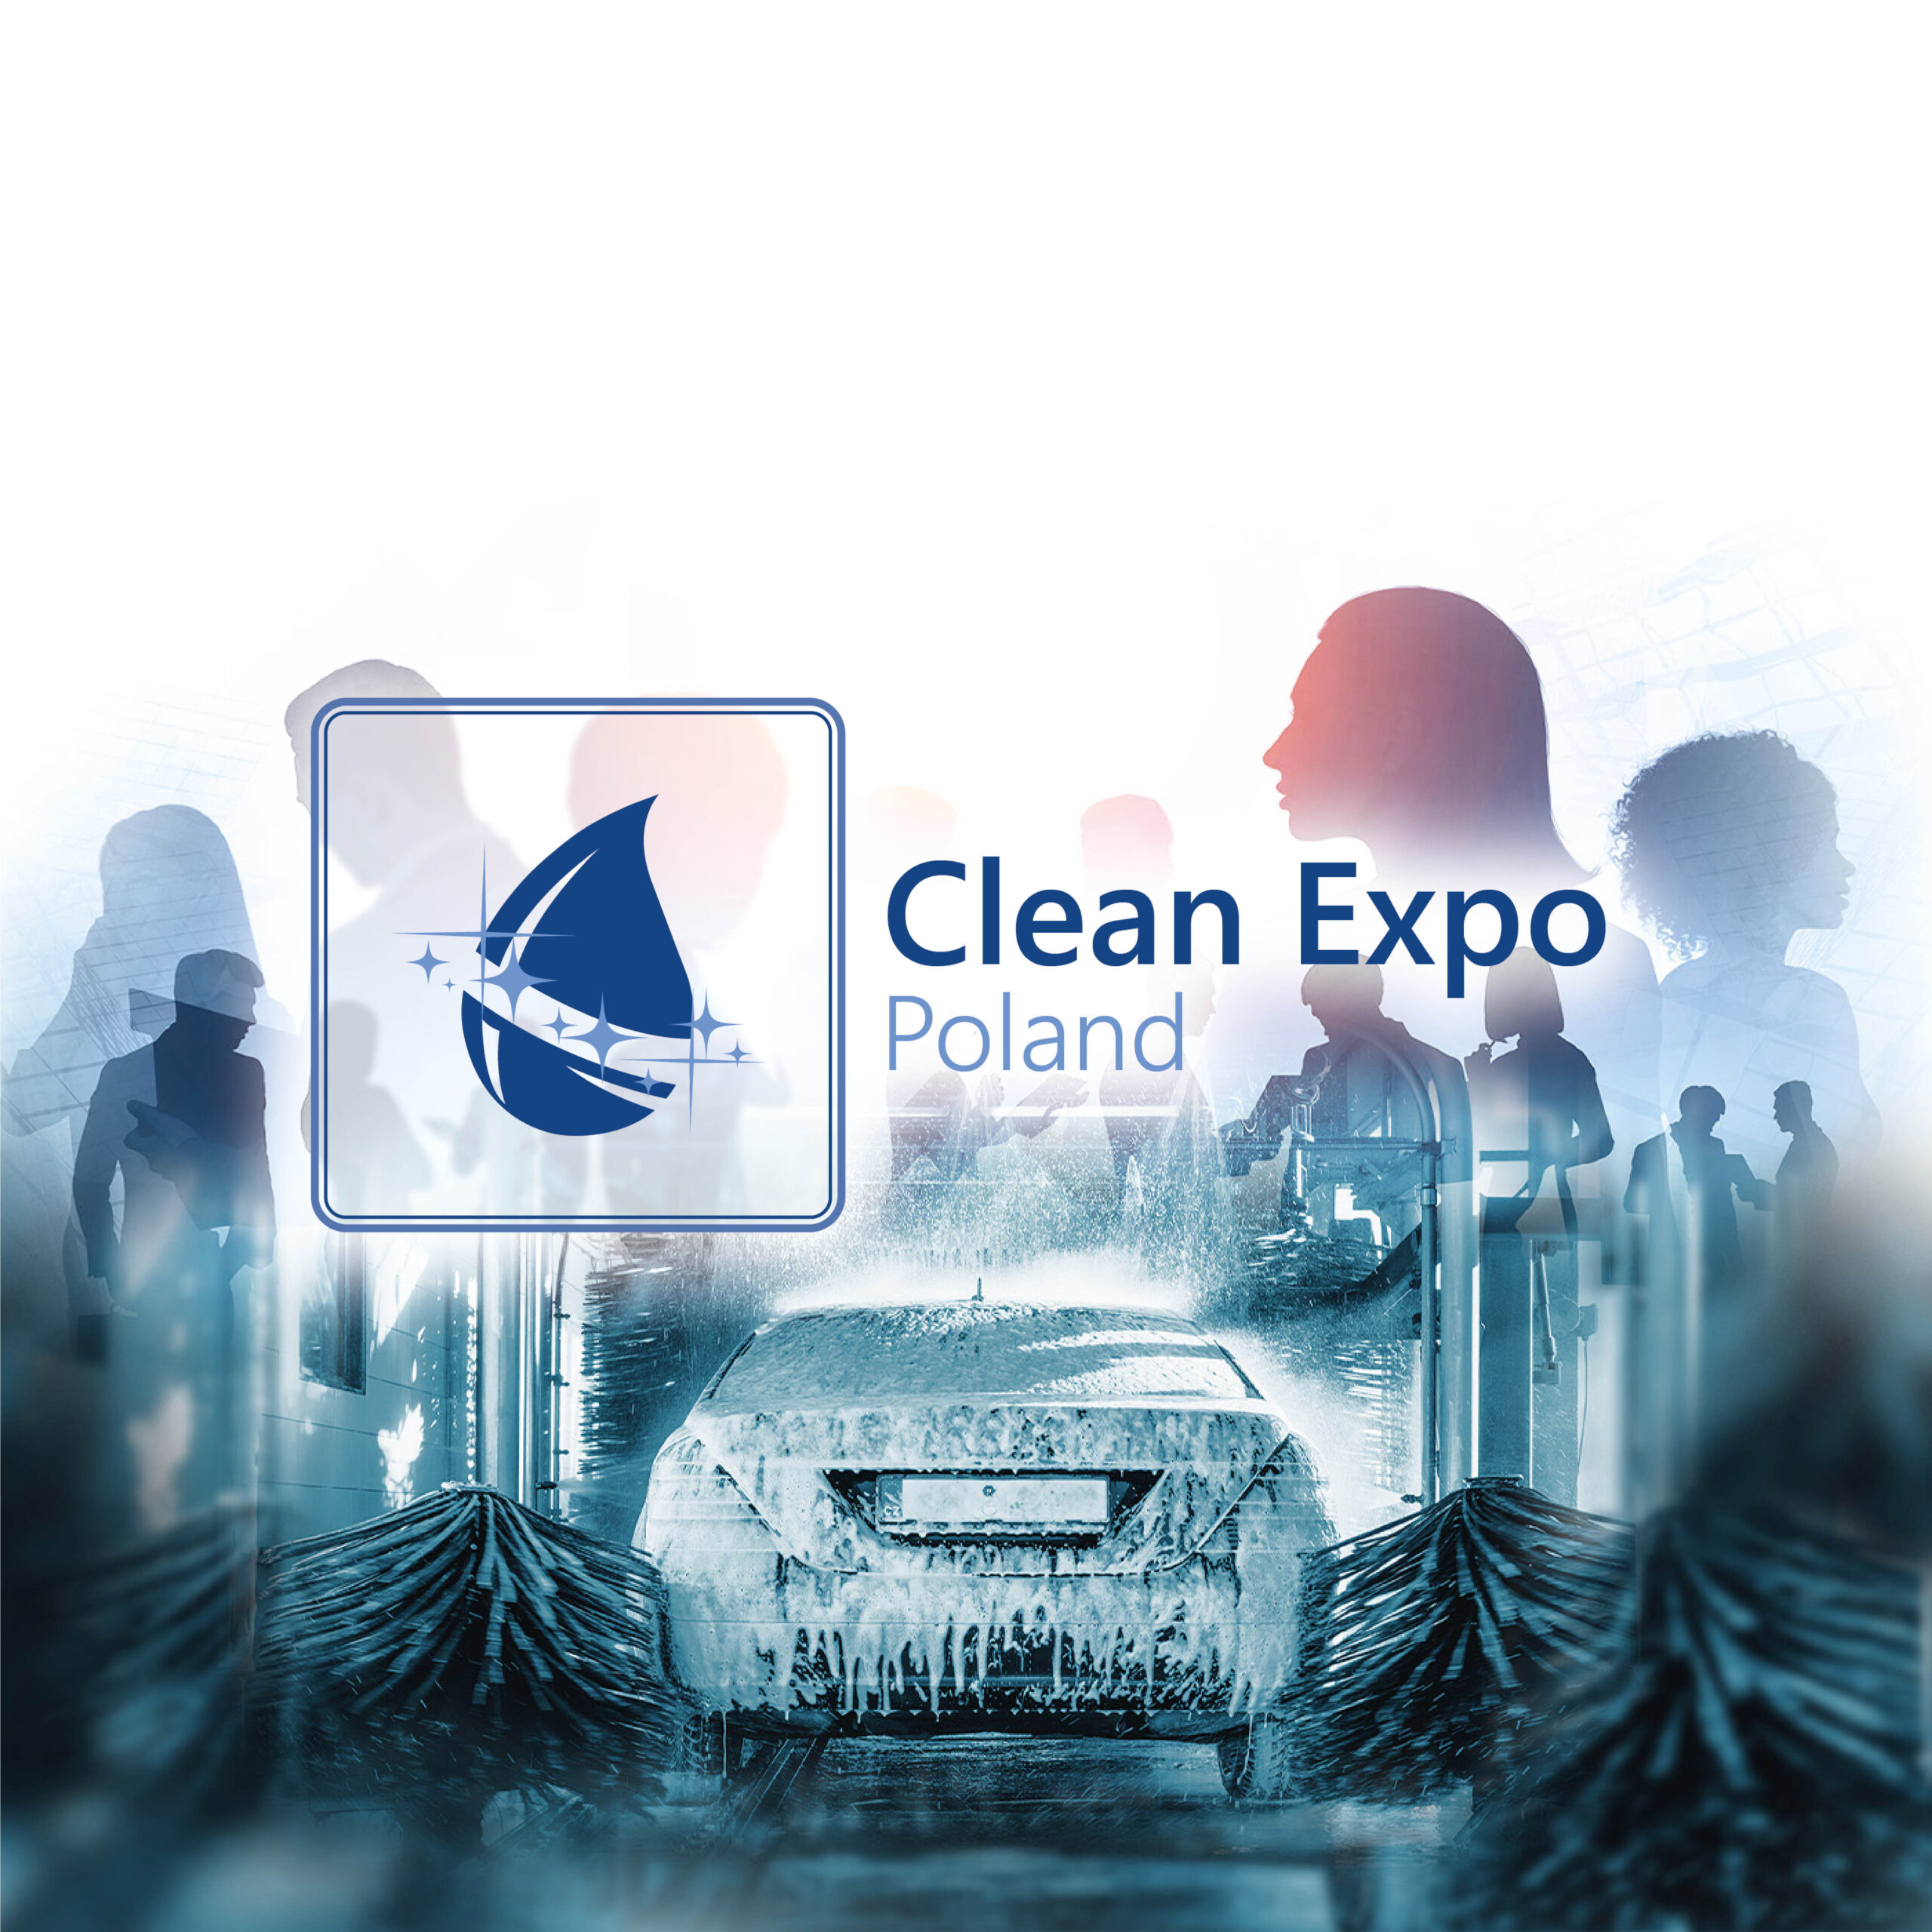 Clean Expo Poland